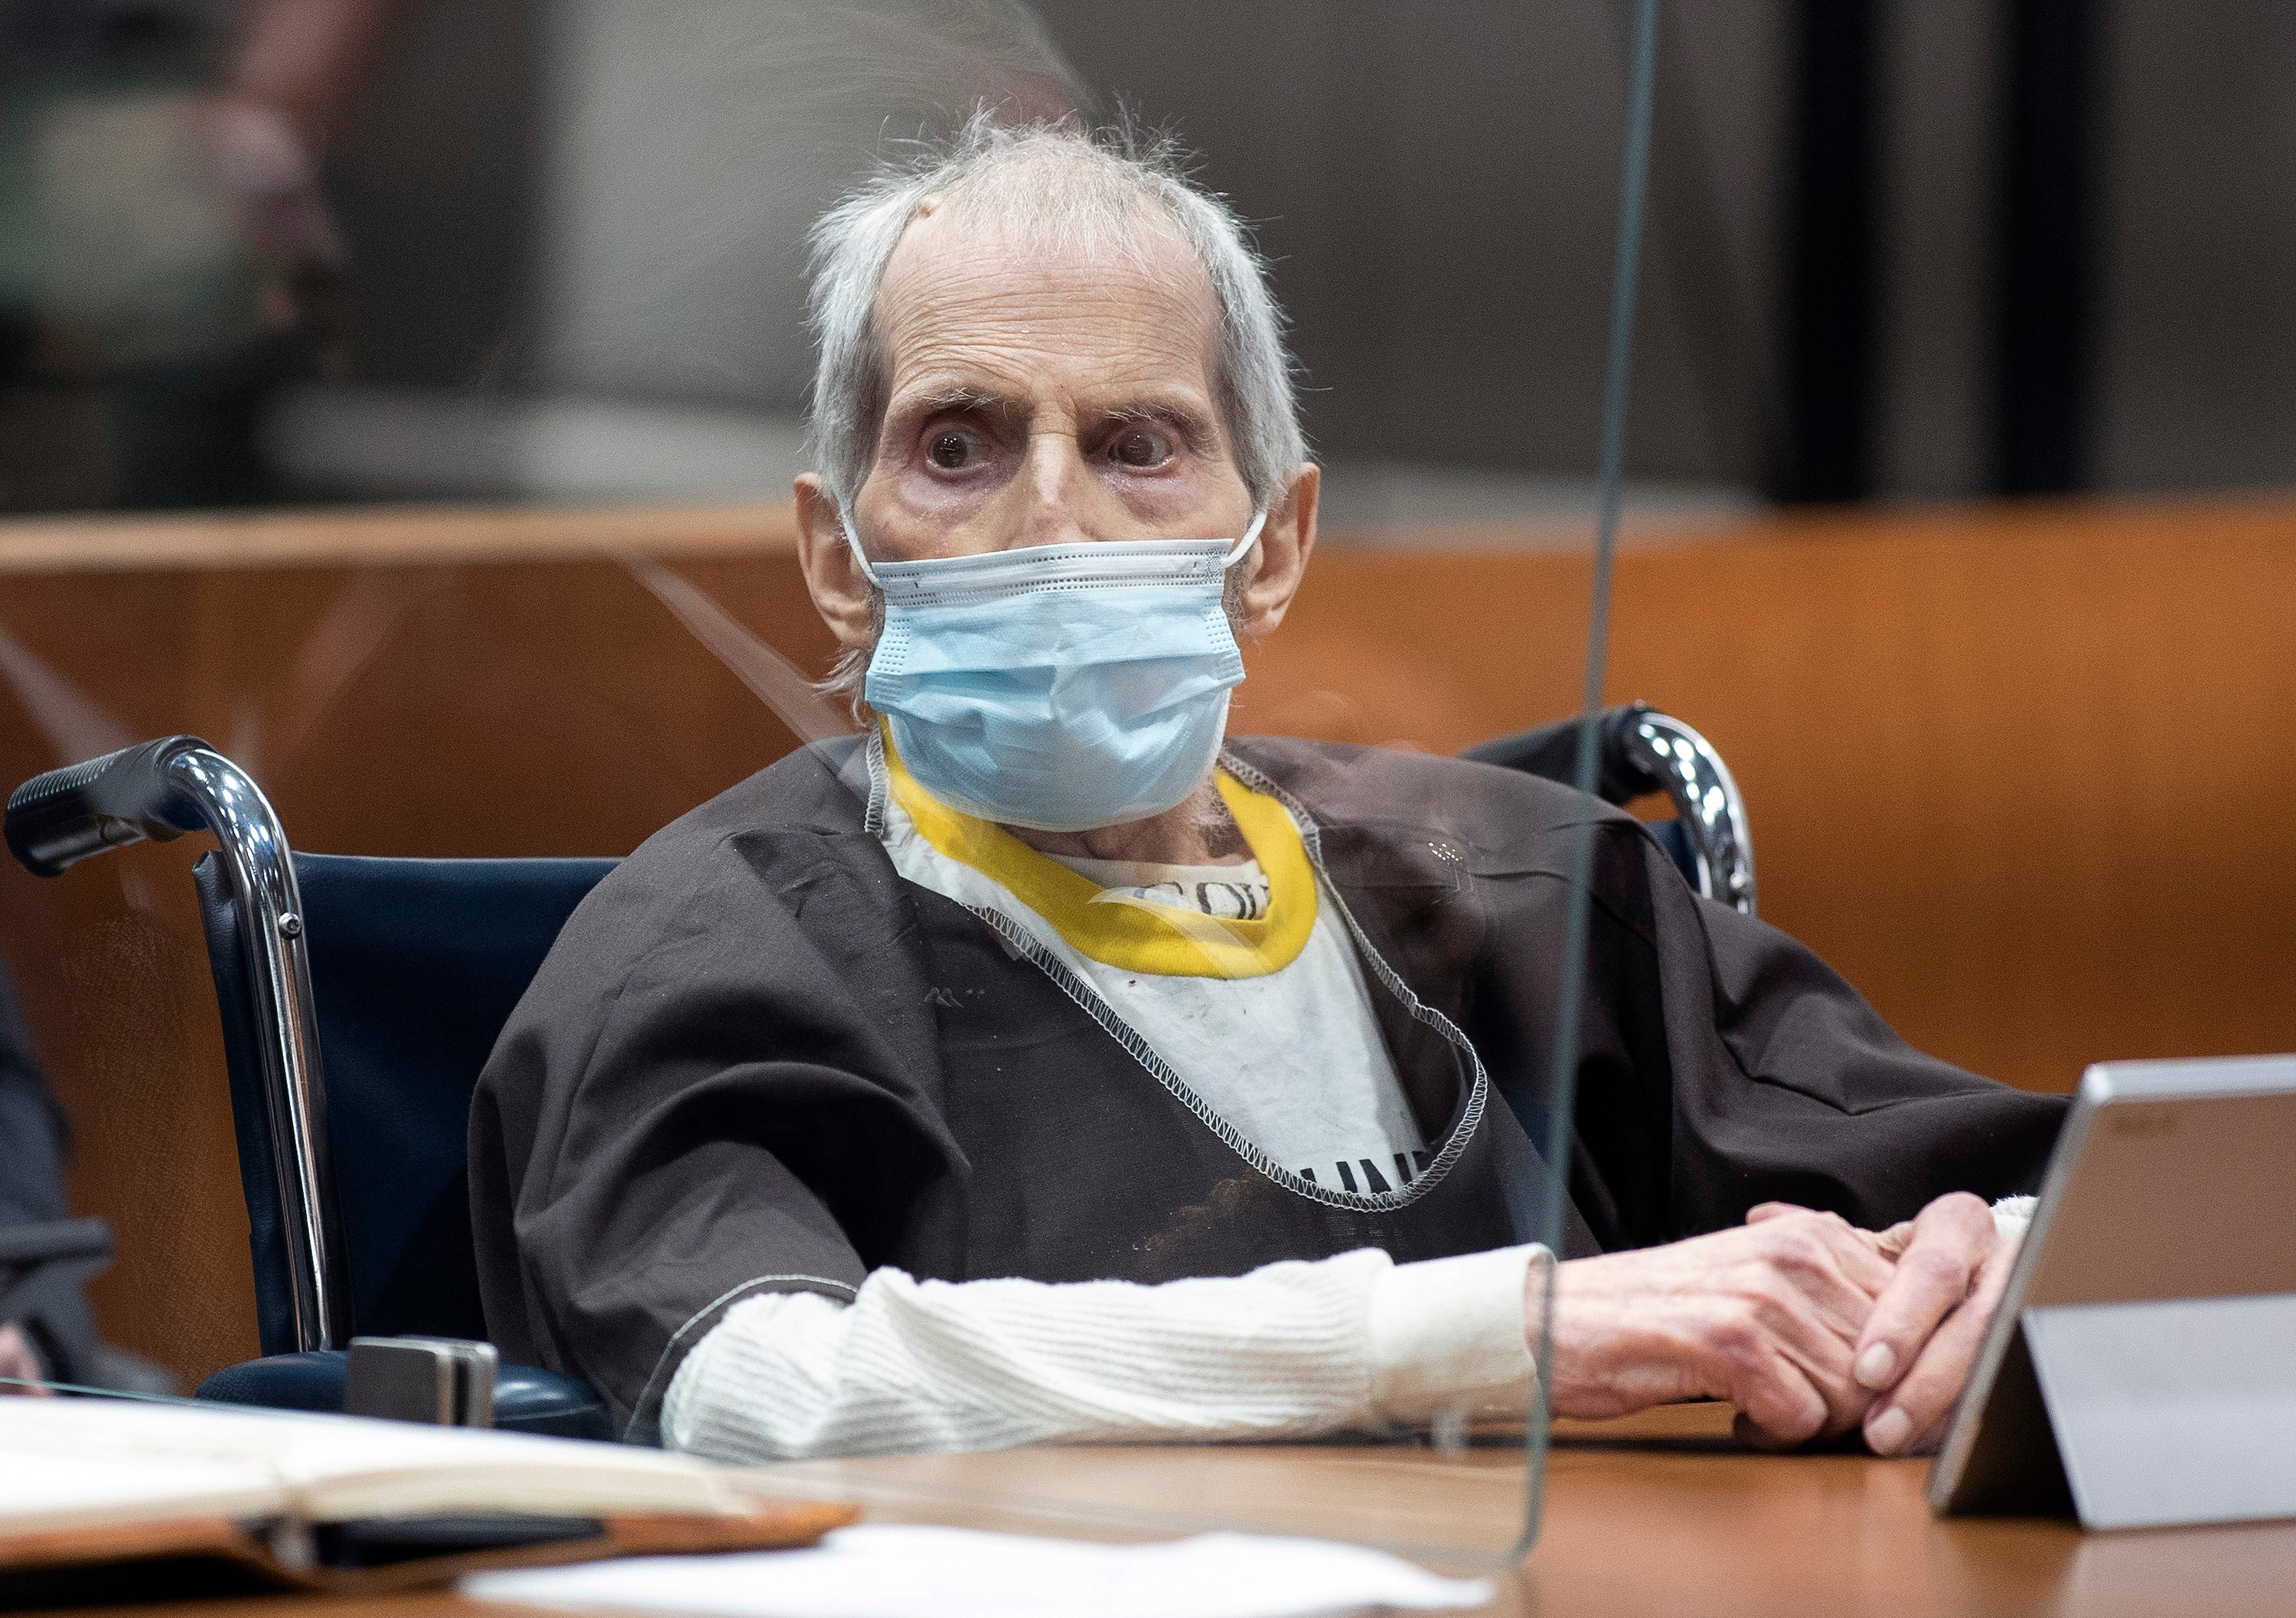 APTOPIX Robert Durst Murder Trial